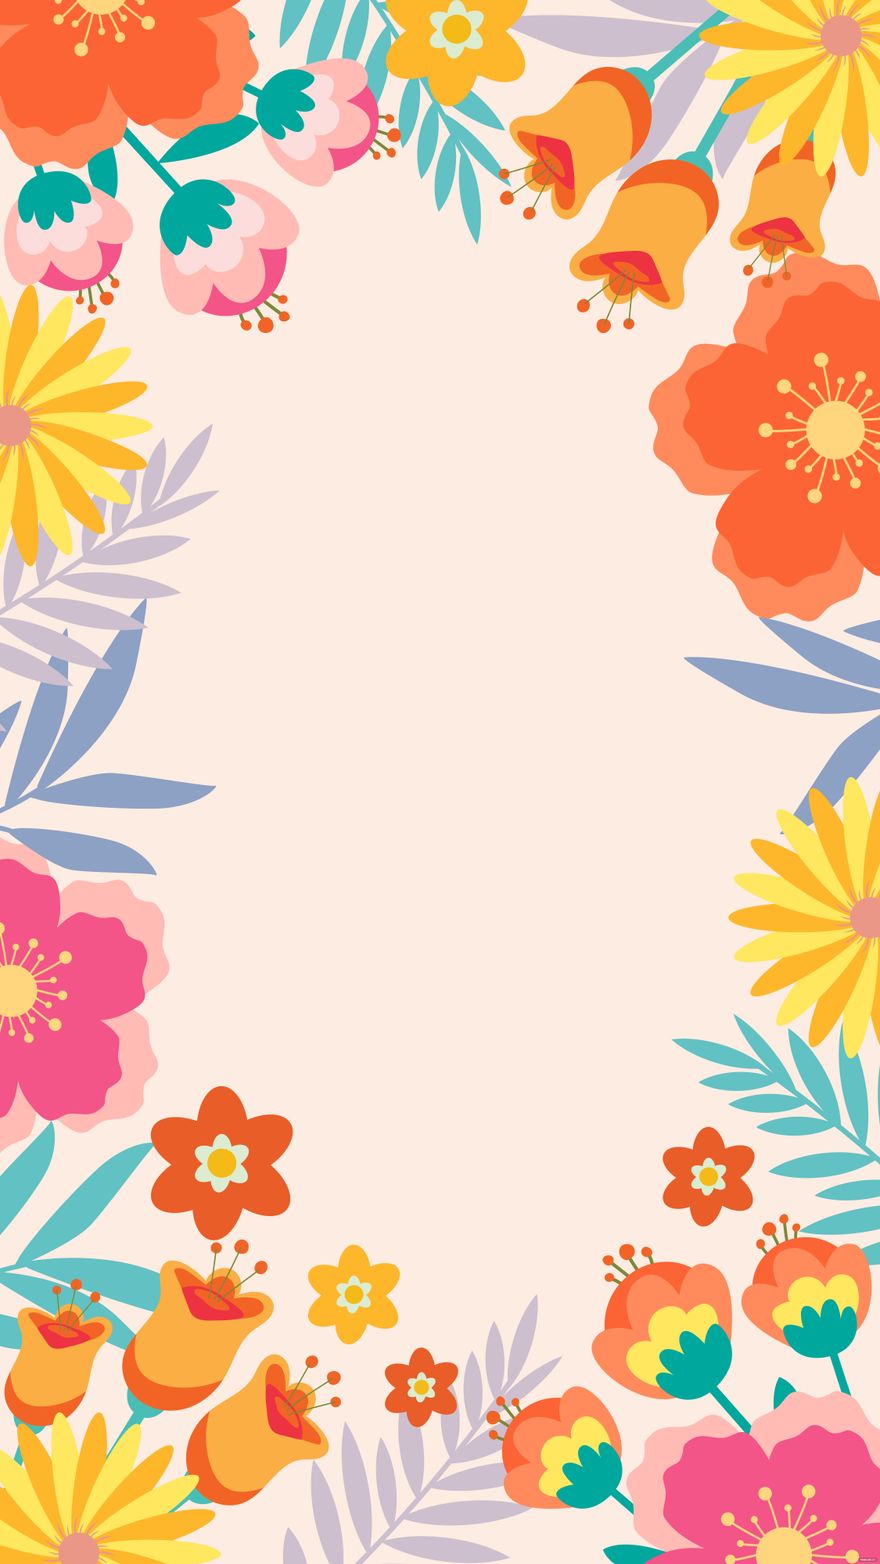 Free Summer Invitation Floral Background in Illustrator, EPS, SVG, JPG